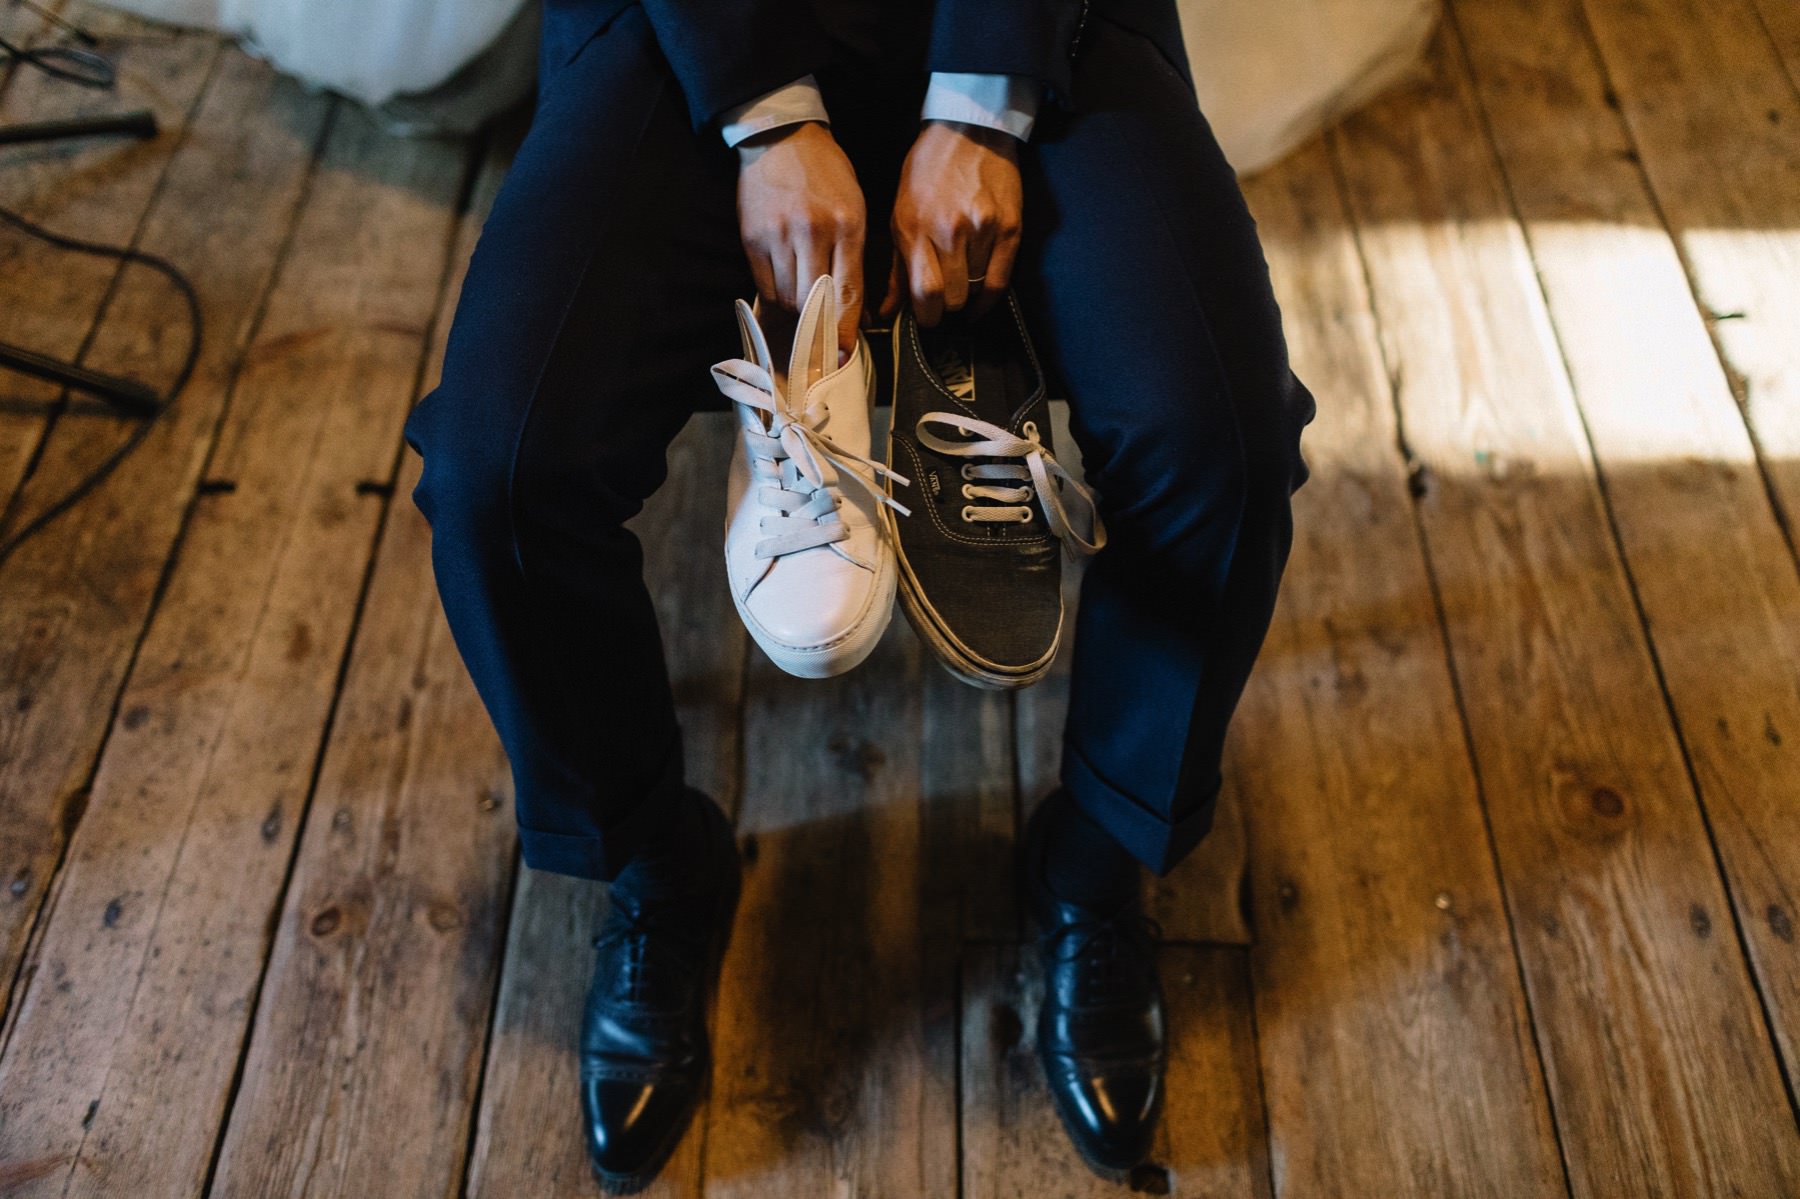 shoe game at weddings